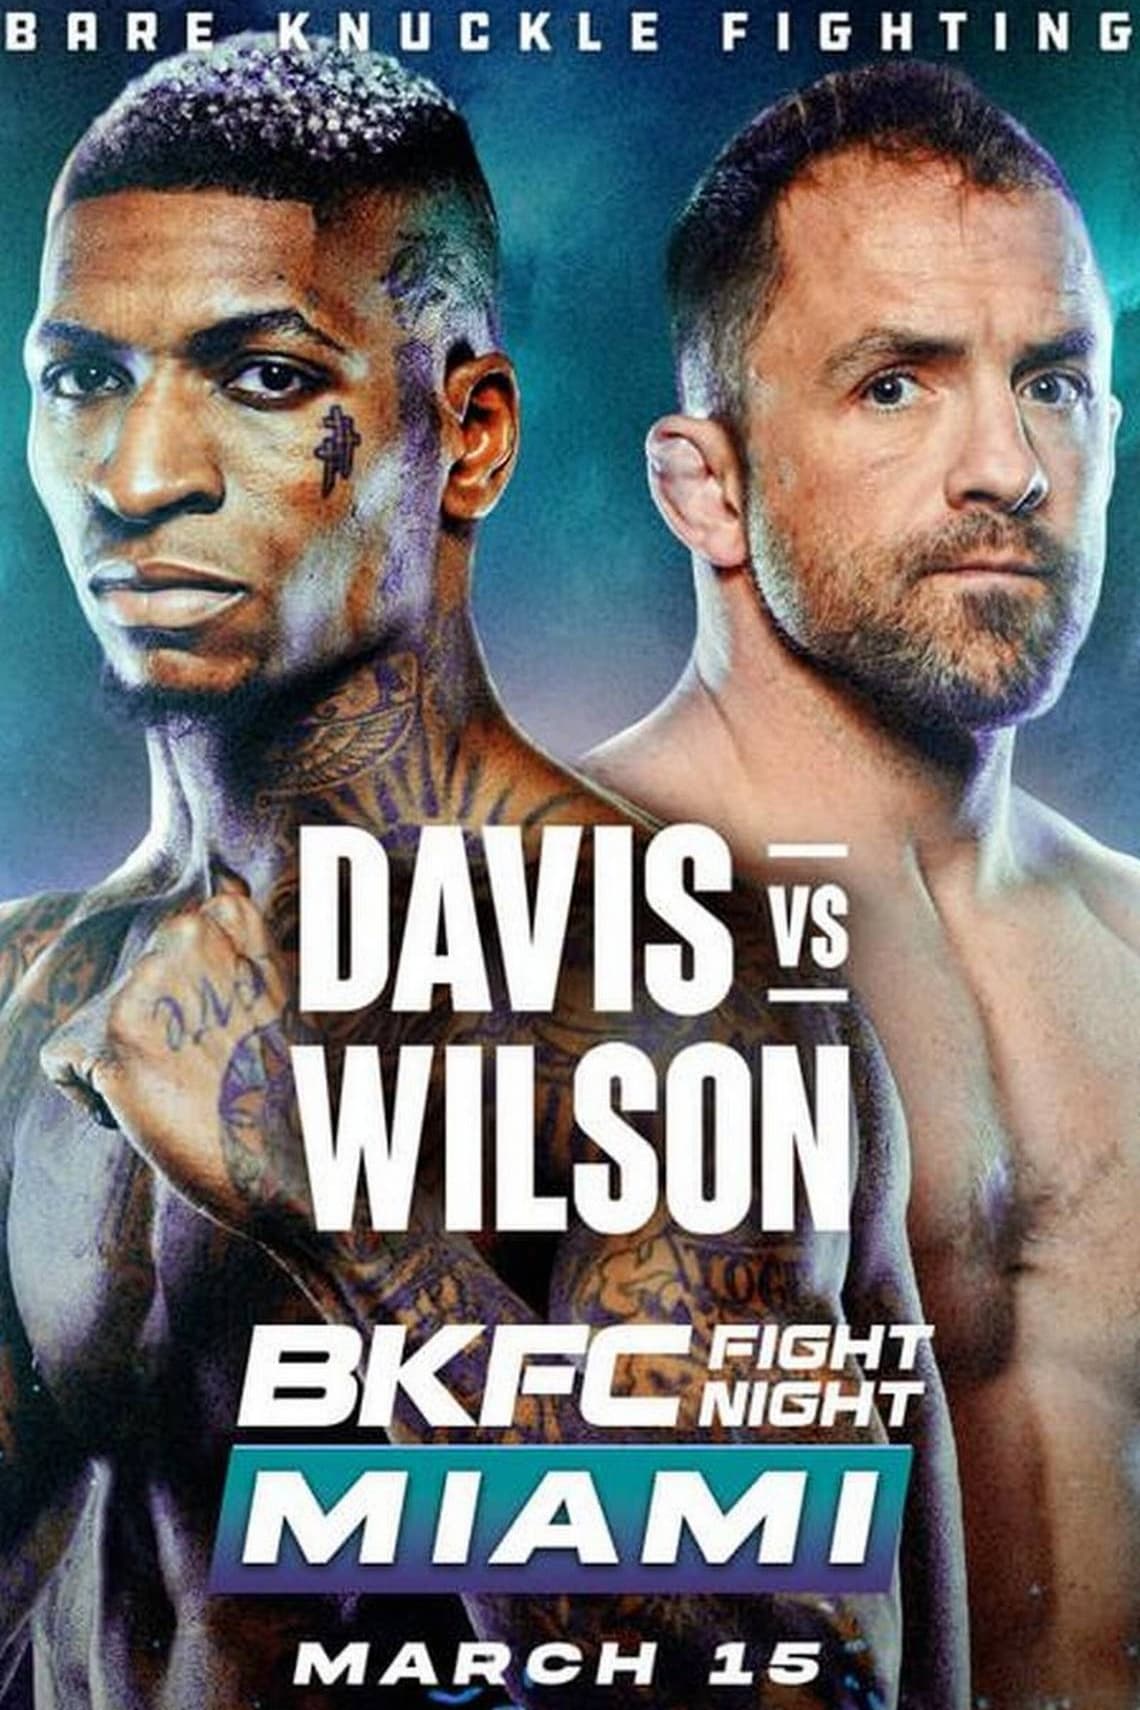 BKFC Fight Night Miami: Davis vs. Wilson